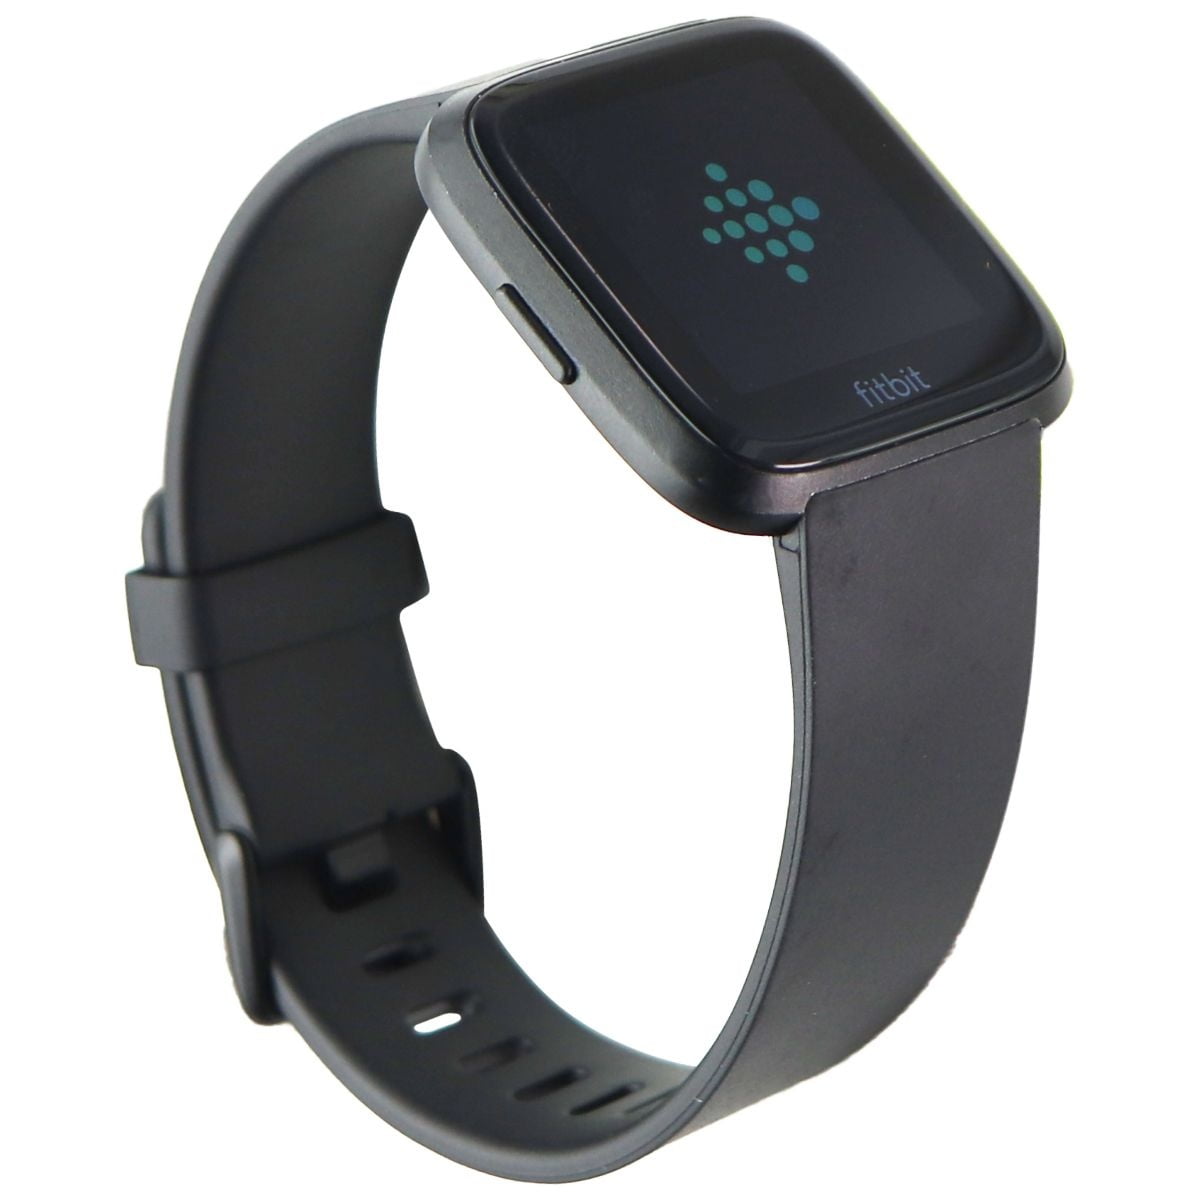 Restored Fitbit Versa Smart Bluetooth Fitness Tracker - Black (FB504) / One Size (Refurbished) Walmart.com